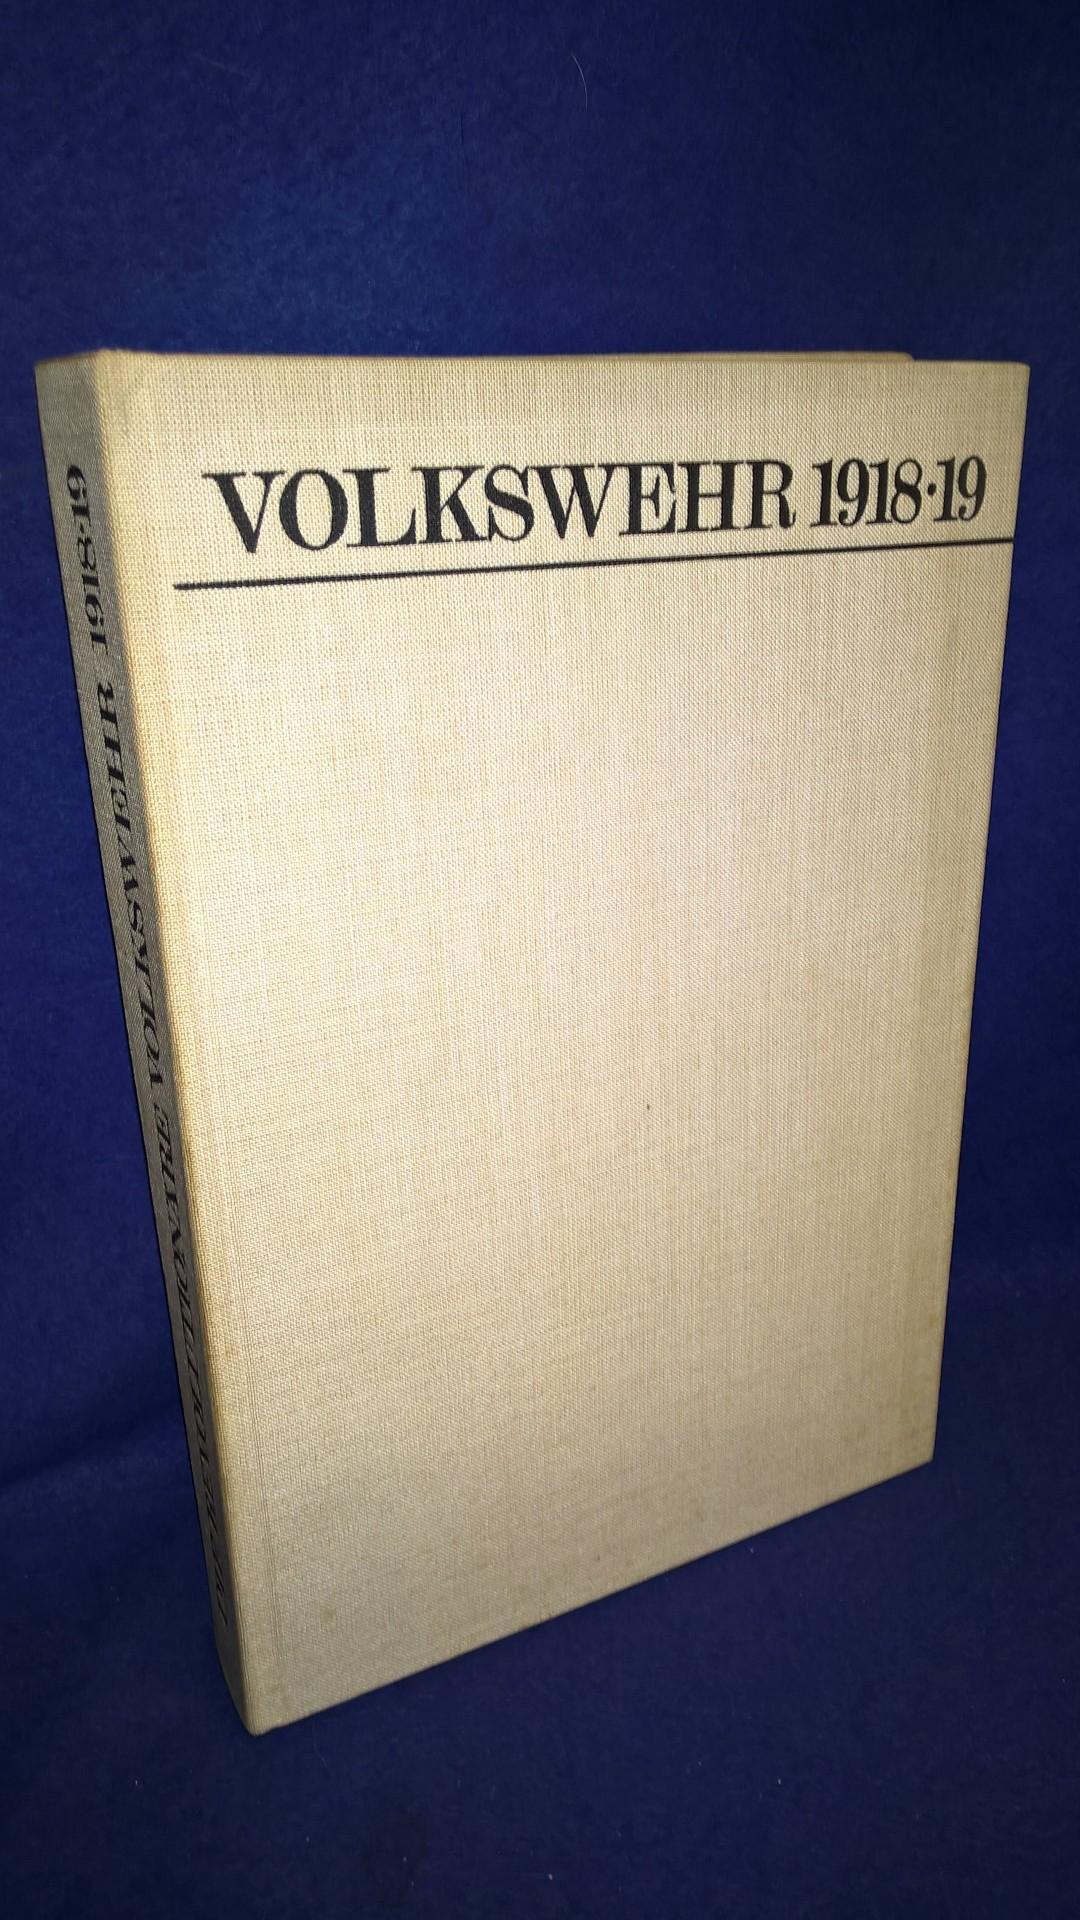 Die revolutionäre Volkswehr 1918/19. - Die deutsche Arbeiterklasse im Kampf um die revolutionäre Volkswehr (November 1918 bis Mai 1919).